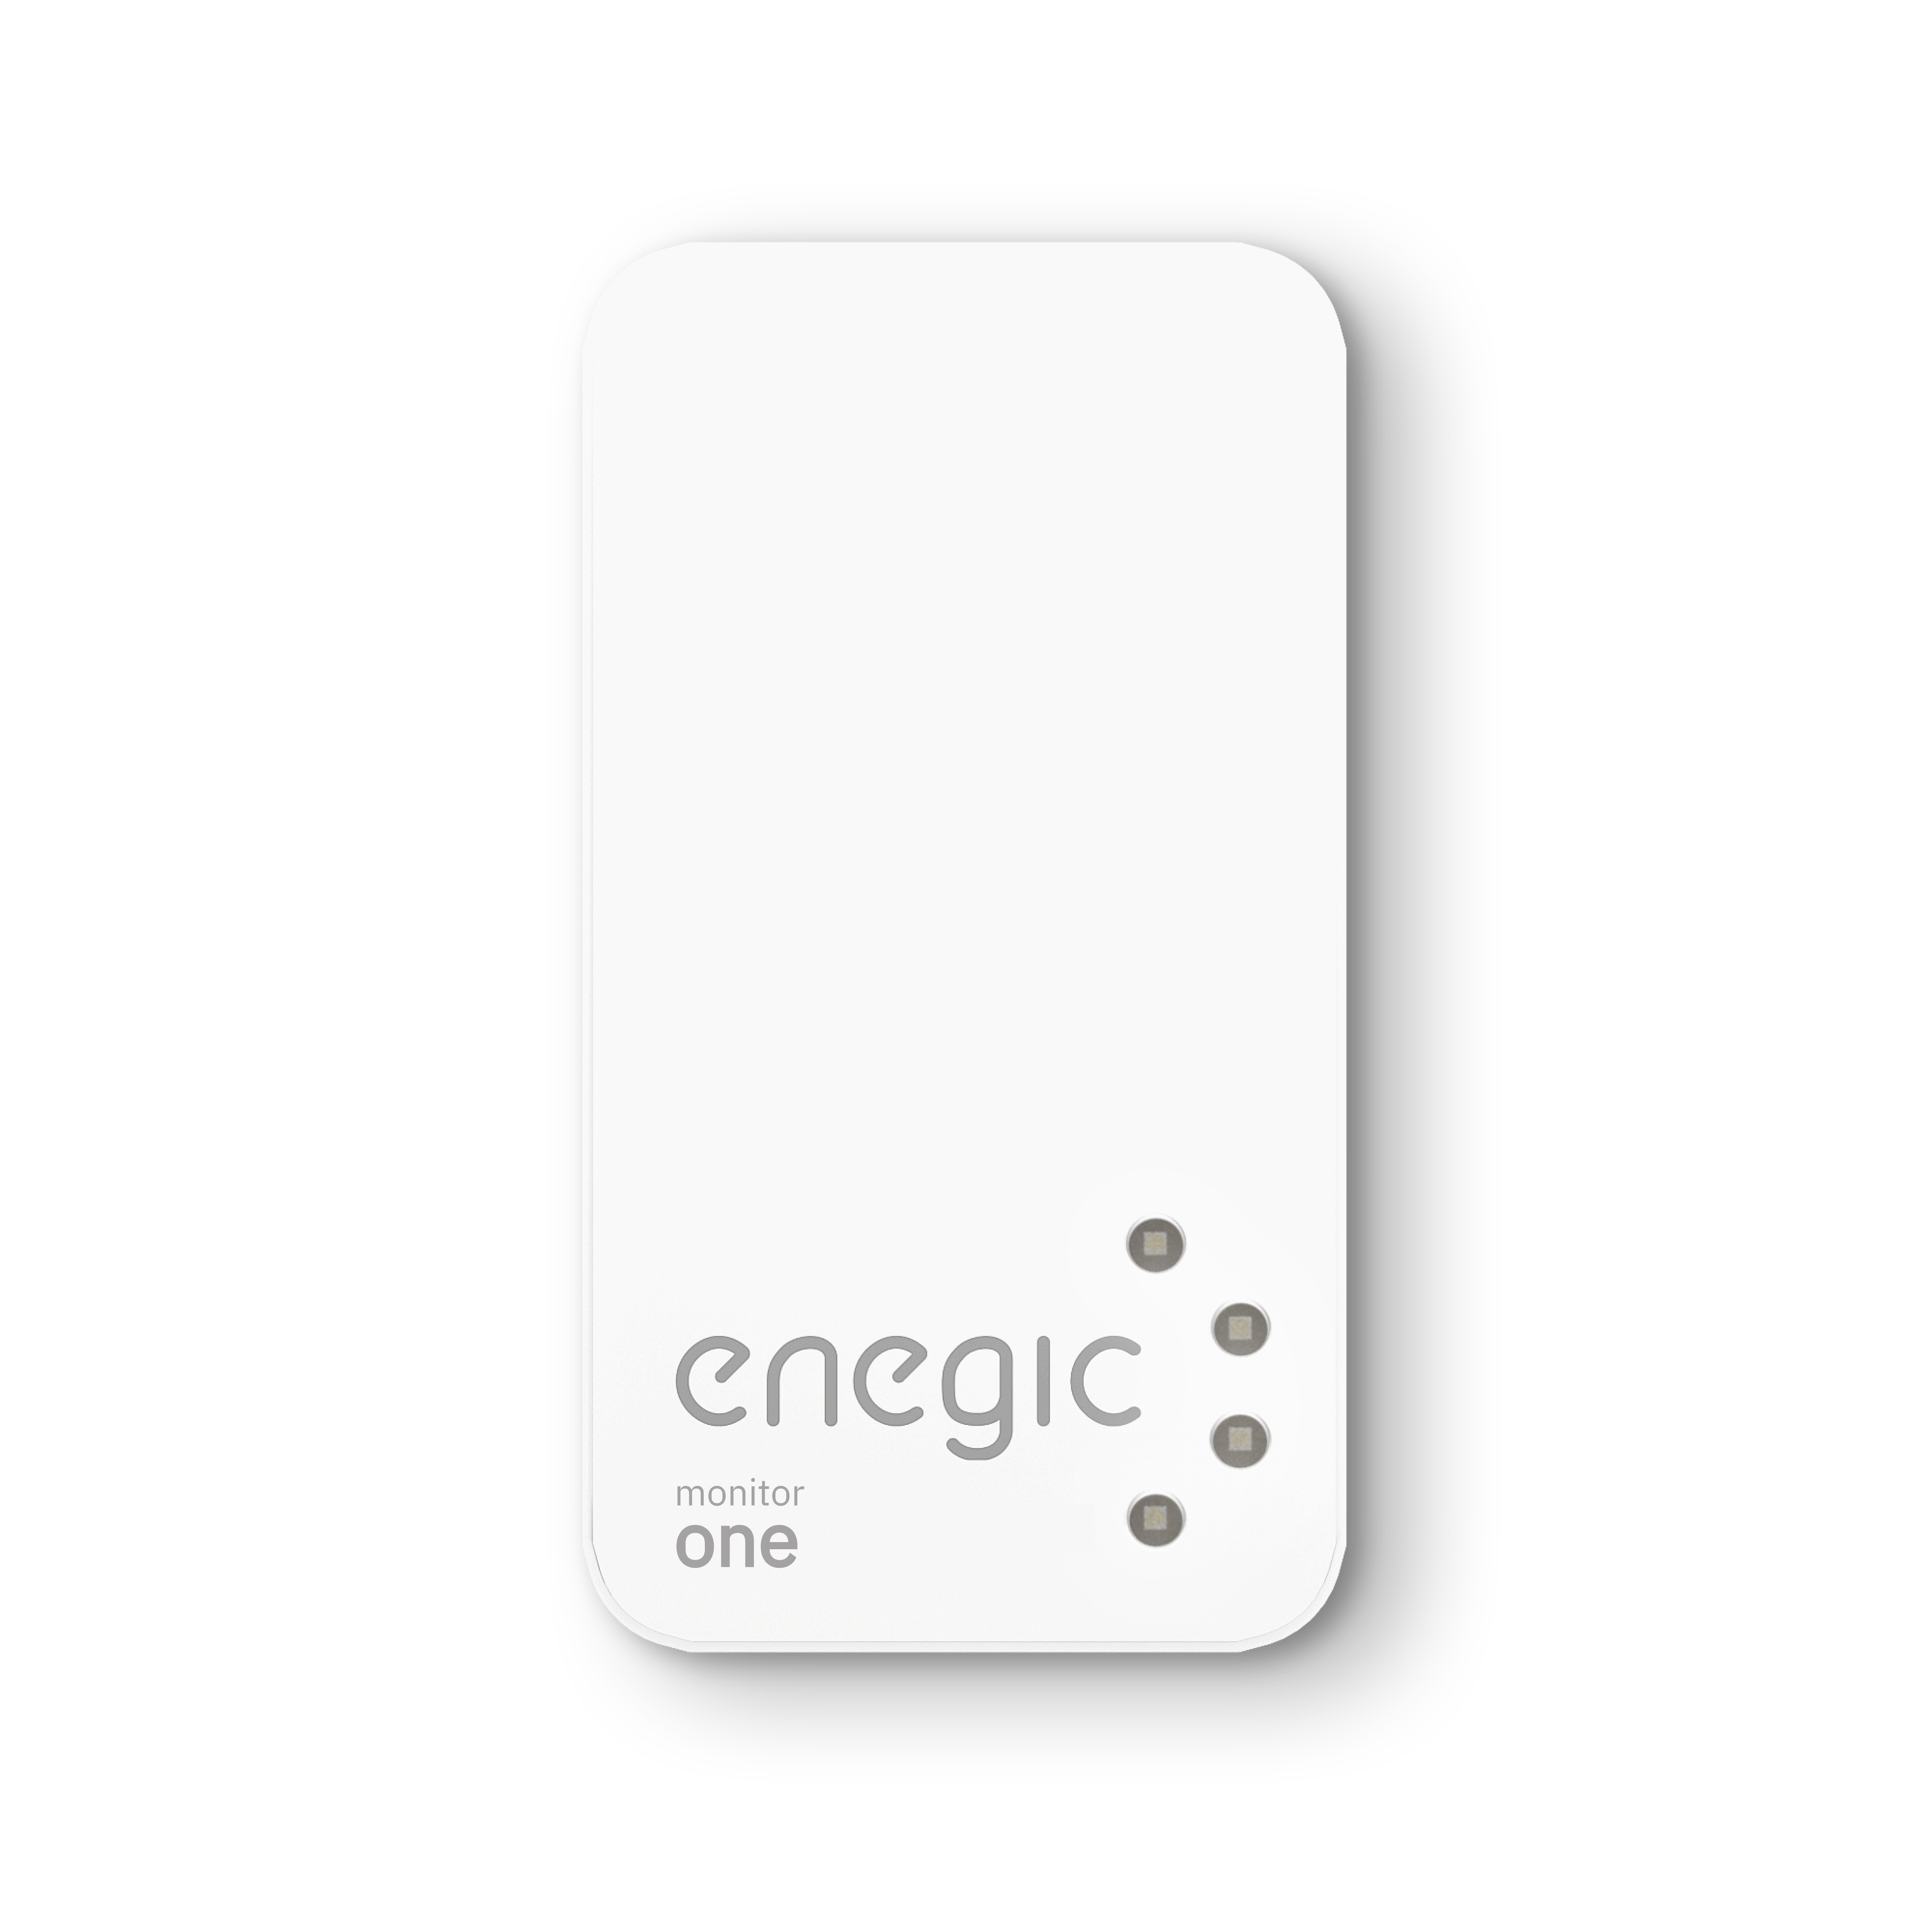 Enegic Monitor one.